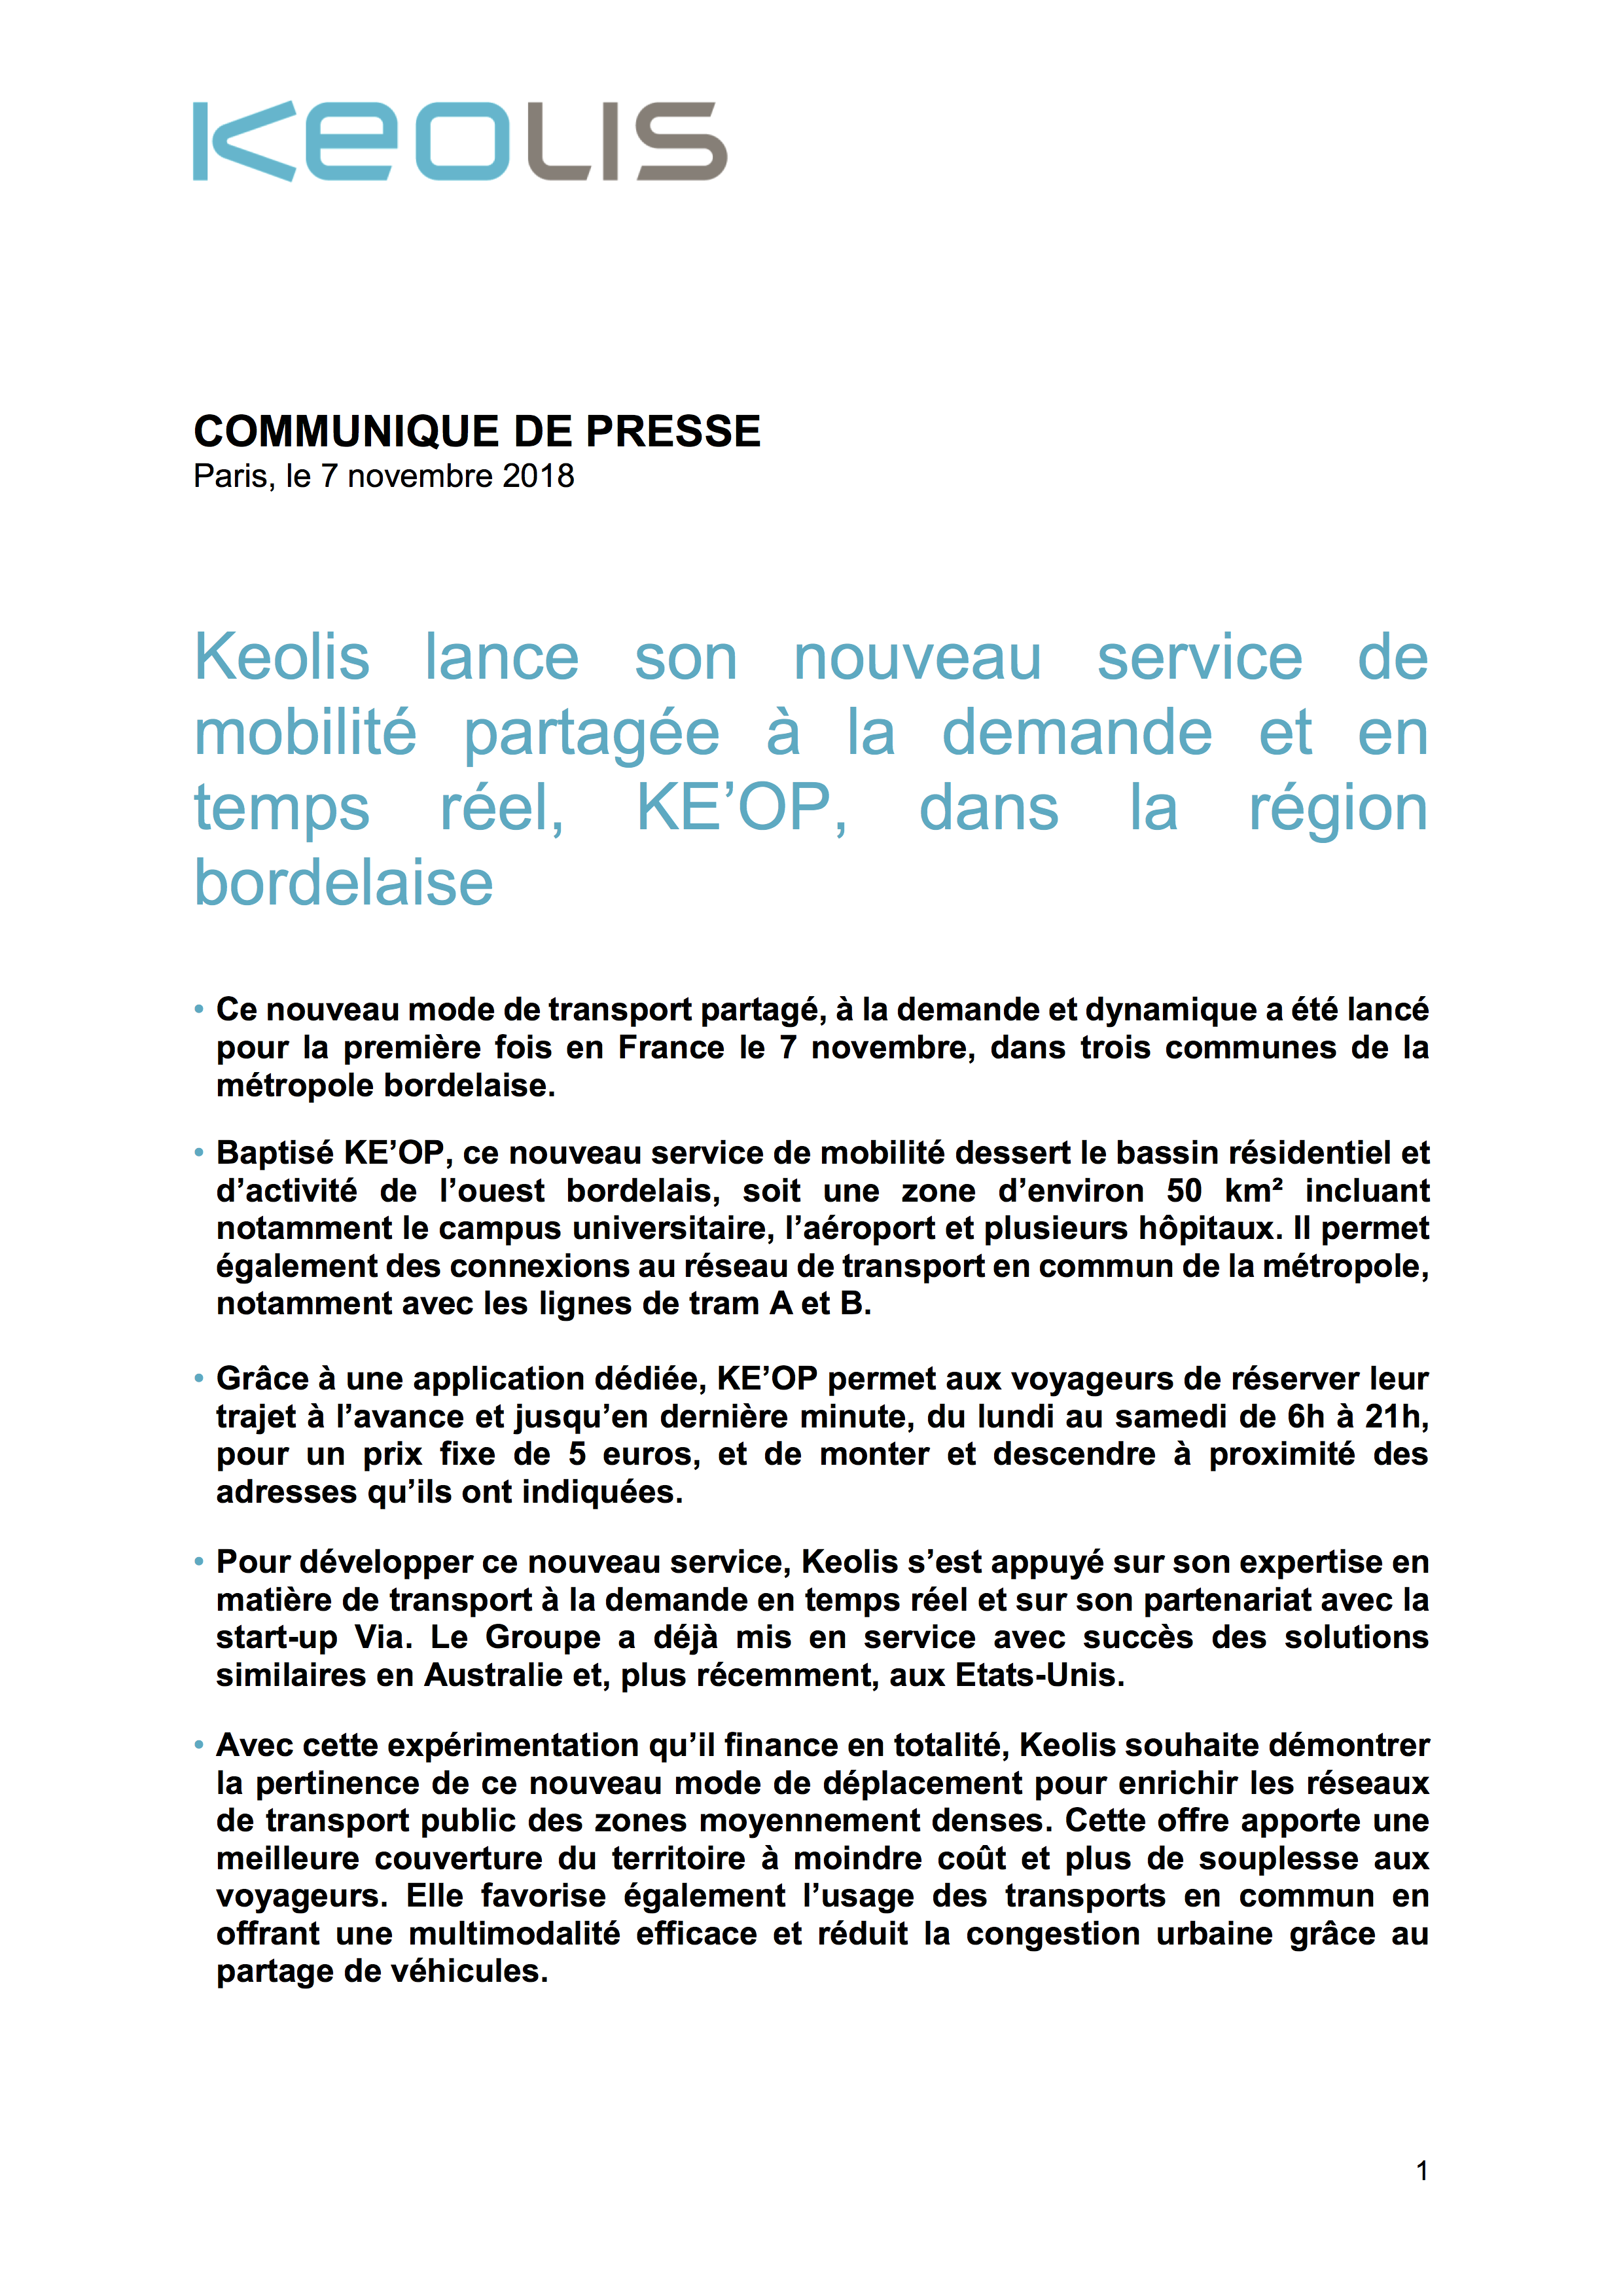 cp-keolis_keolis-lance-son-nouveau-service-de-mobilite-partagee-a-la-demande-et-en-temps-reel_partie1